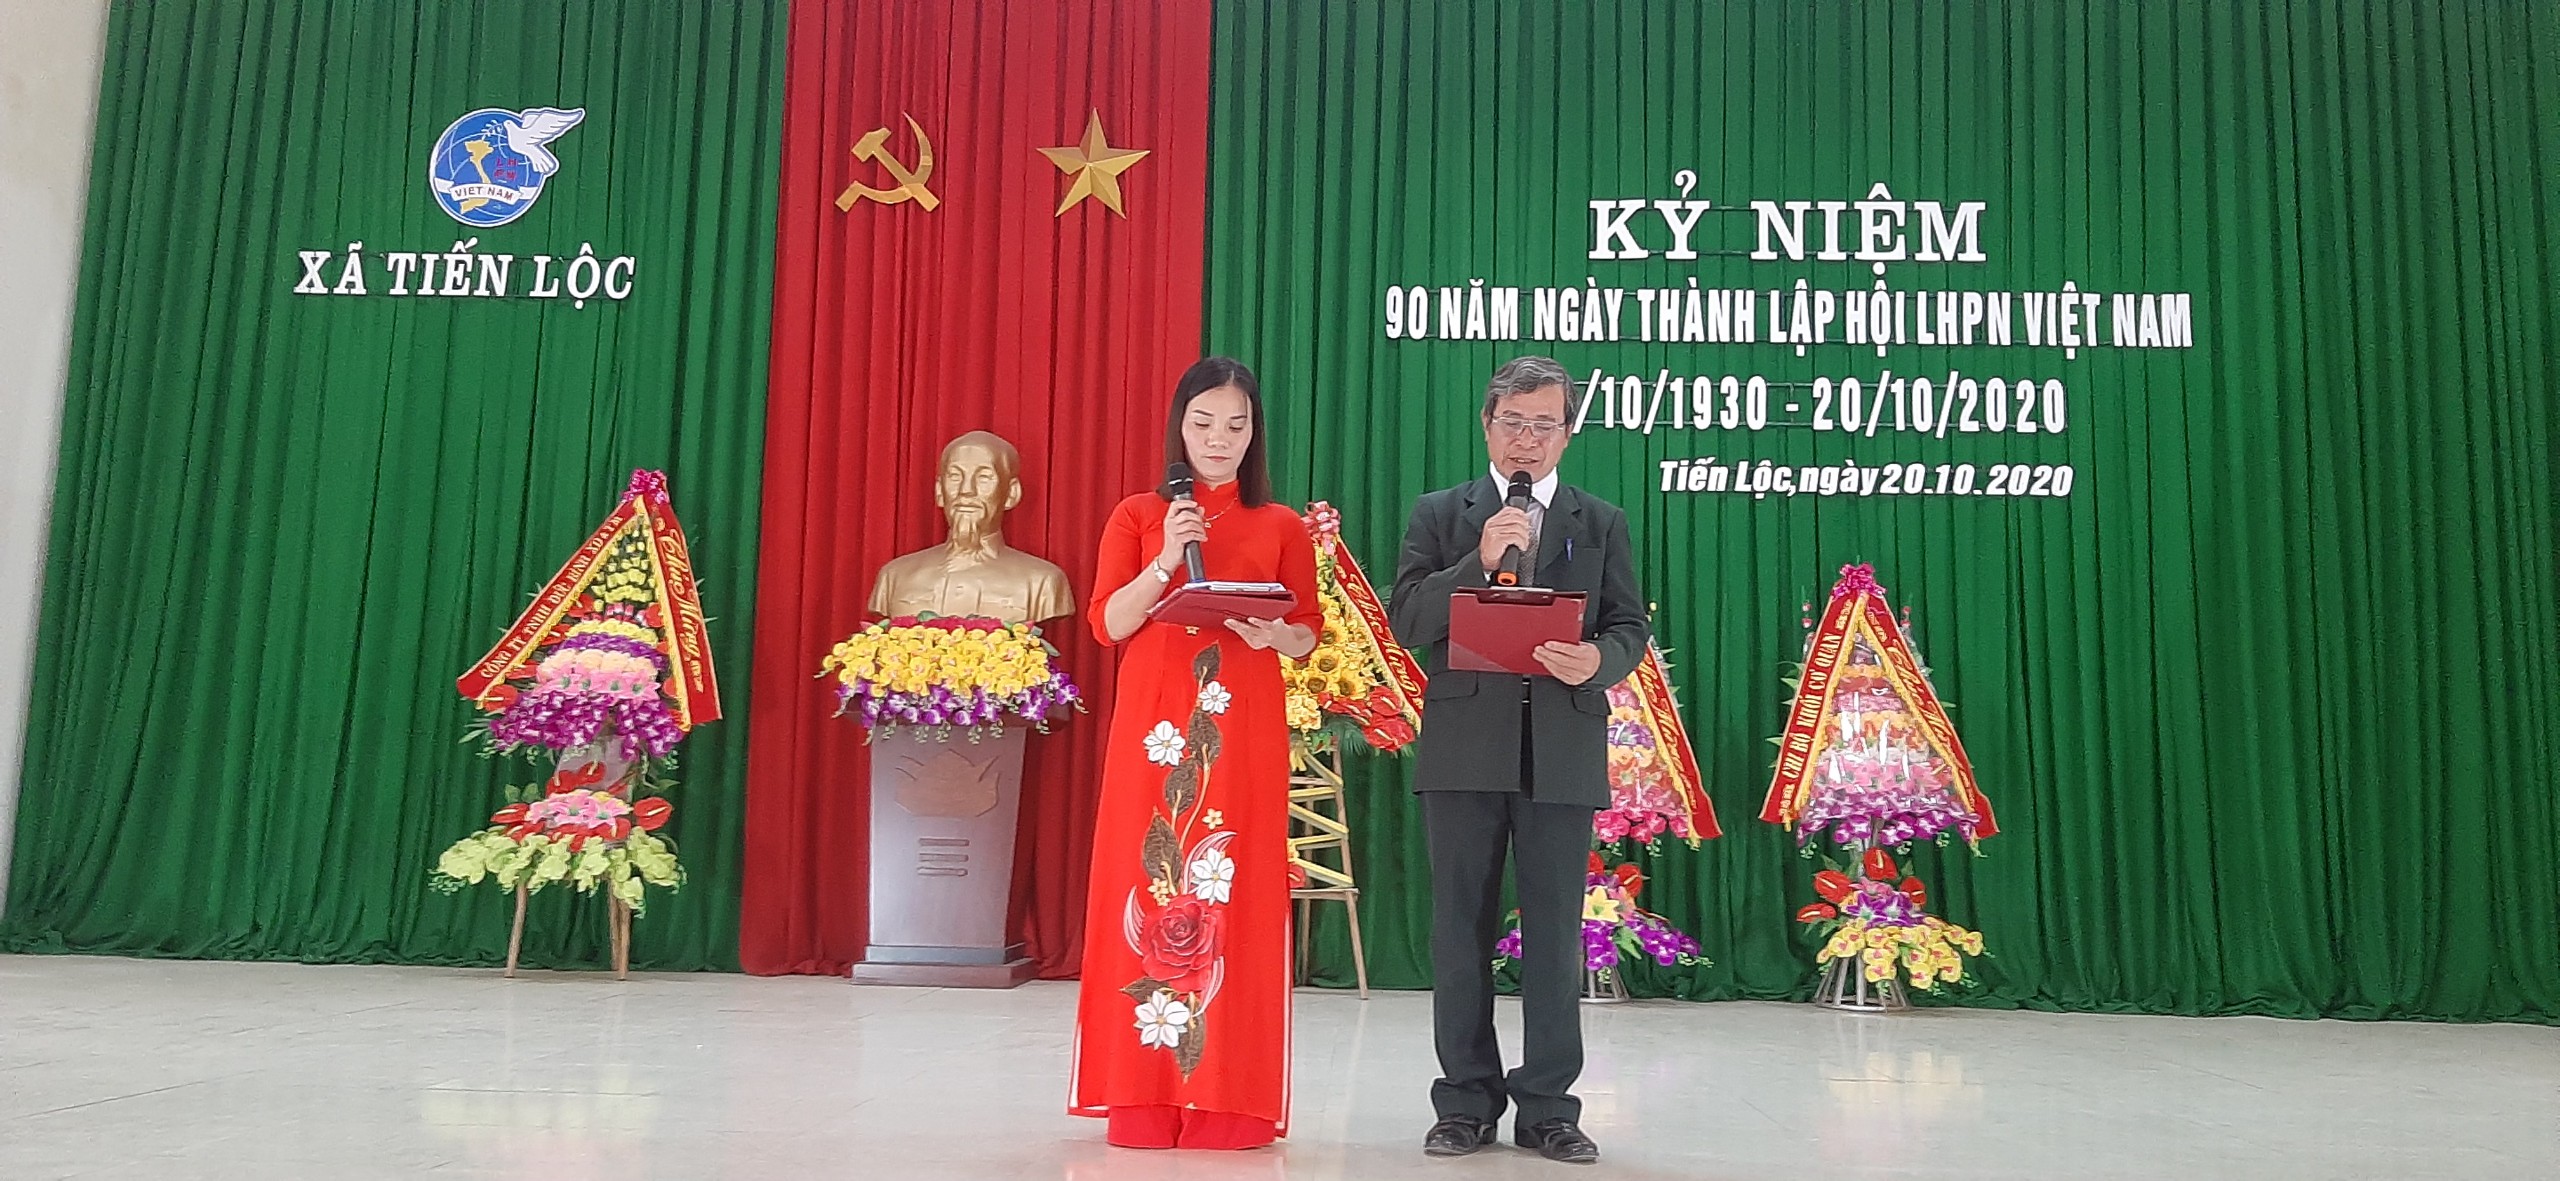 Phụ nữ Xã Tiến Lộc Tổ chức Lễ kỹ niệm 90 năm ngày thành lập Hội LHPN Việt Nam 20/10/1930 - 20/10/2020